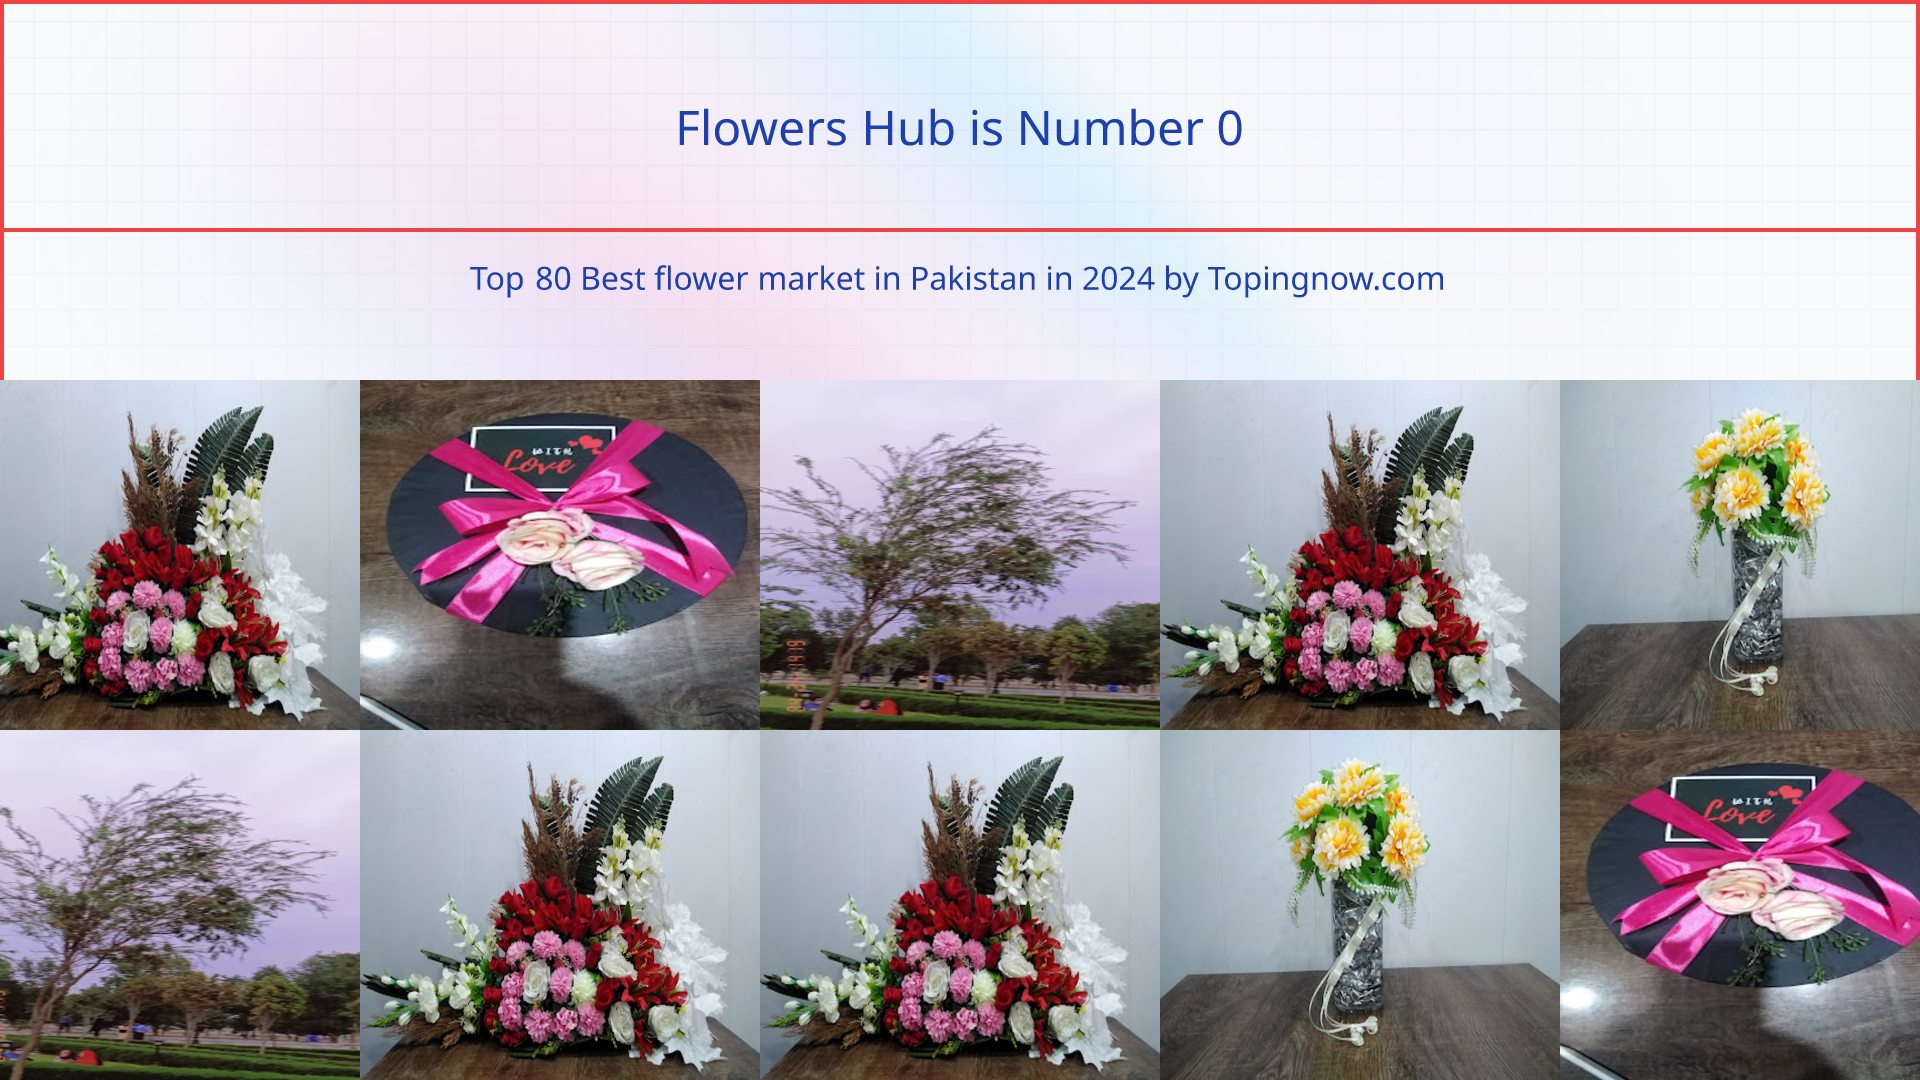 Flowers Hub: Top 80 Best flower market in Pakistan in 2024